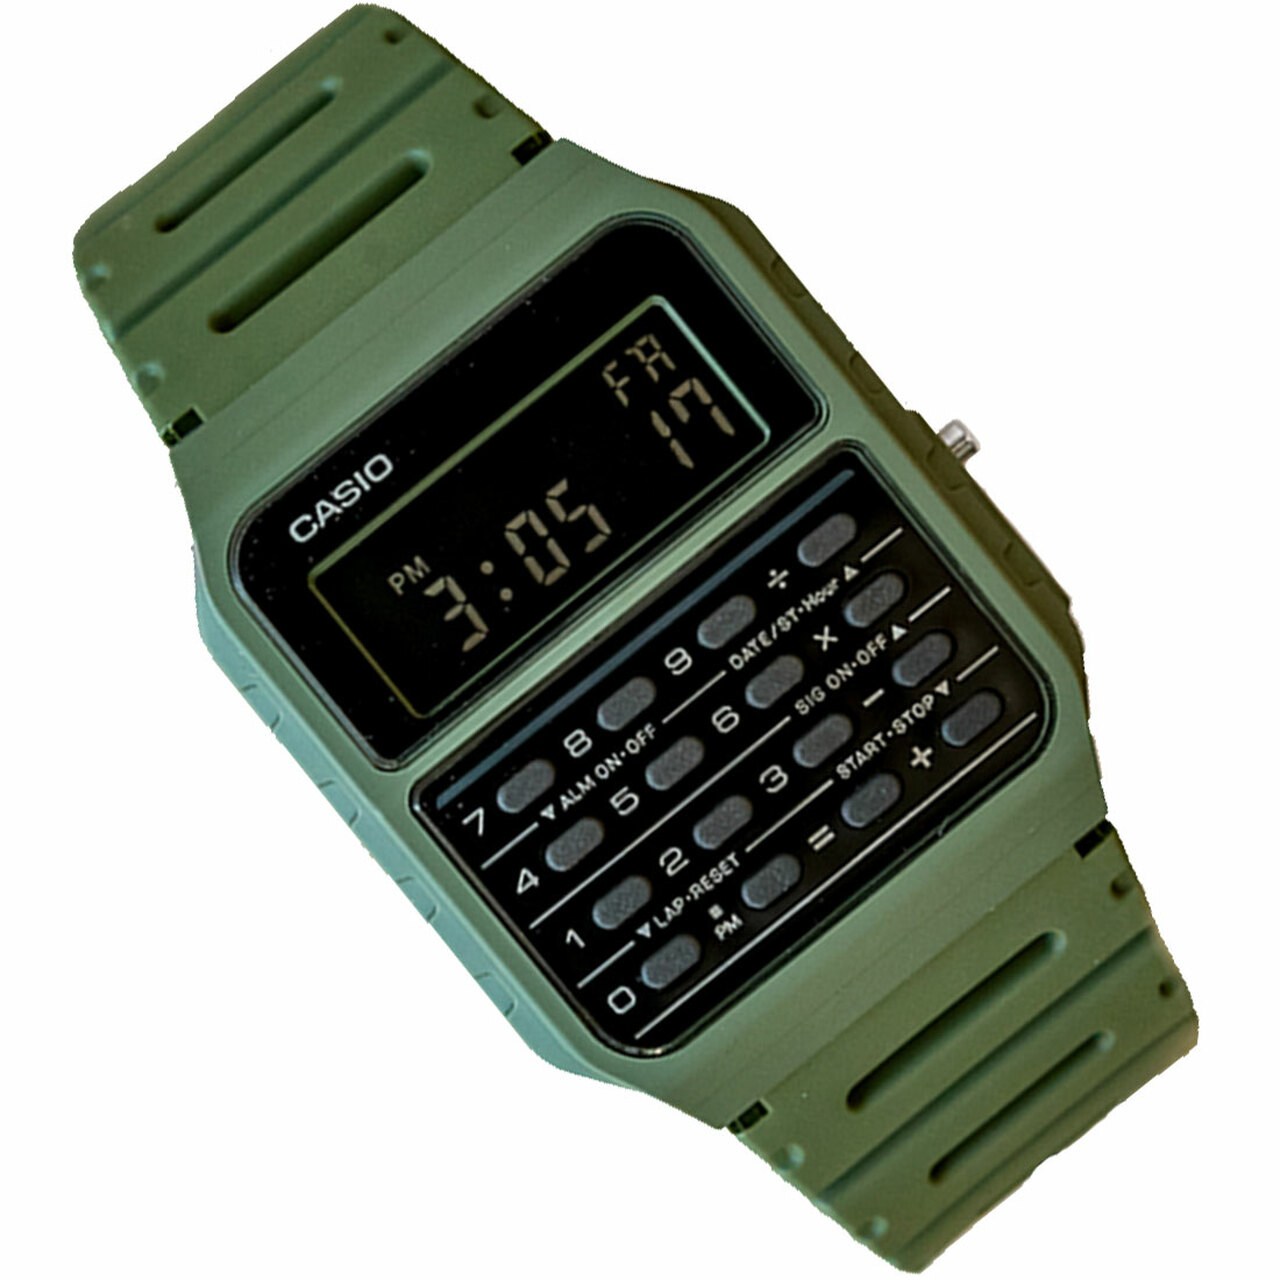 Reloj para hombre Casio Ca-53w-1z Vintage Alarma Calculadora hora dual